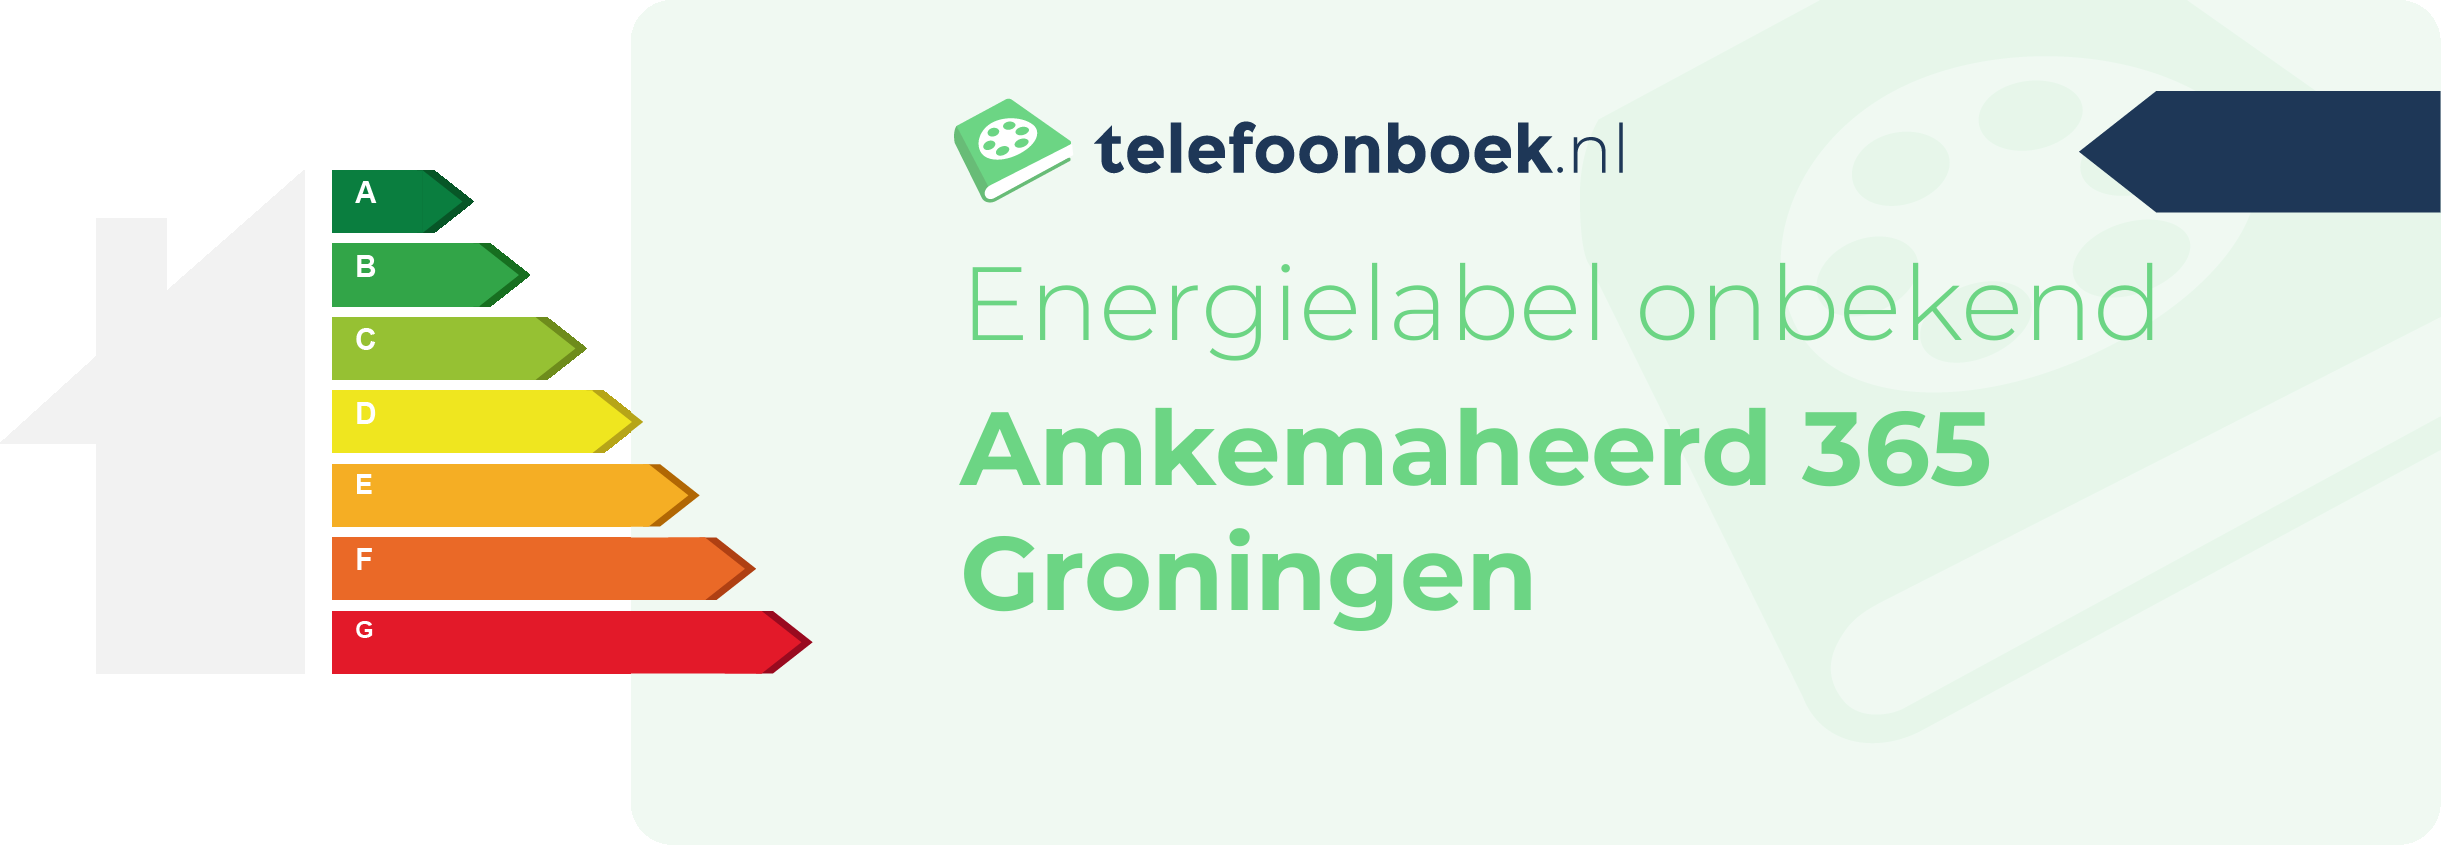 Energielabel Amkemaheerd 365 Groningen